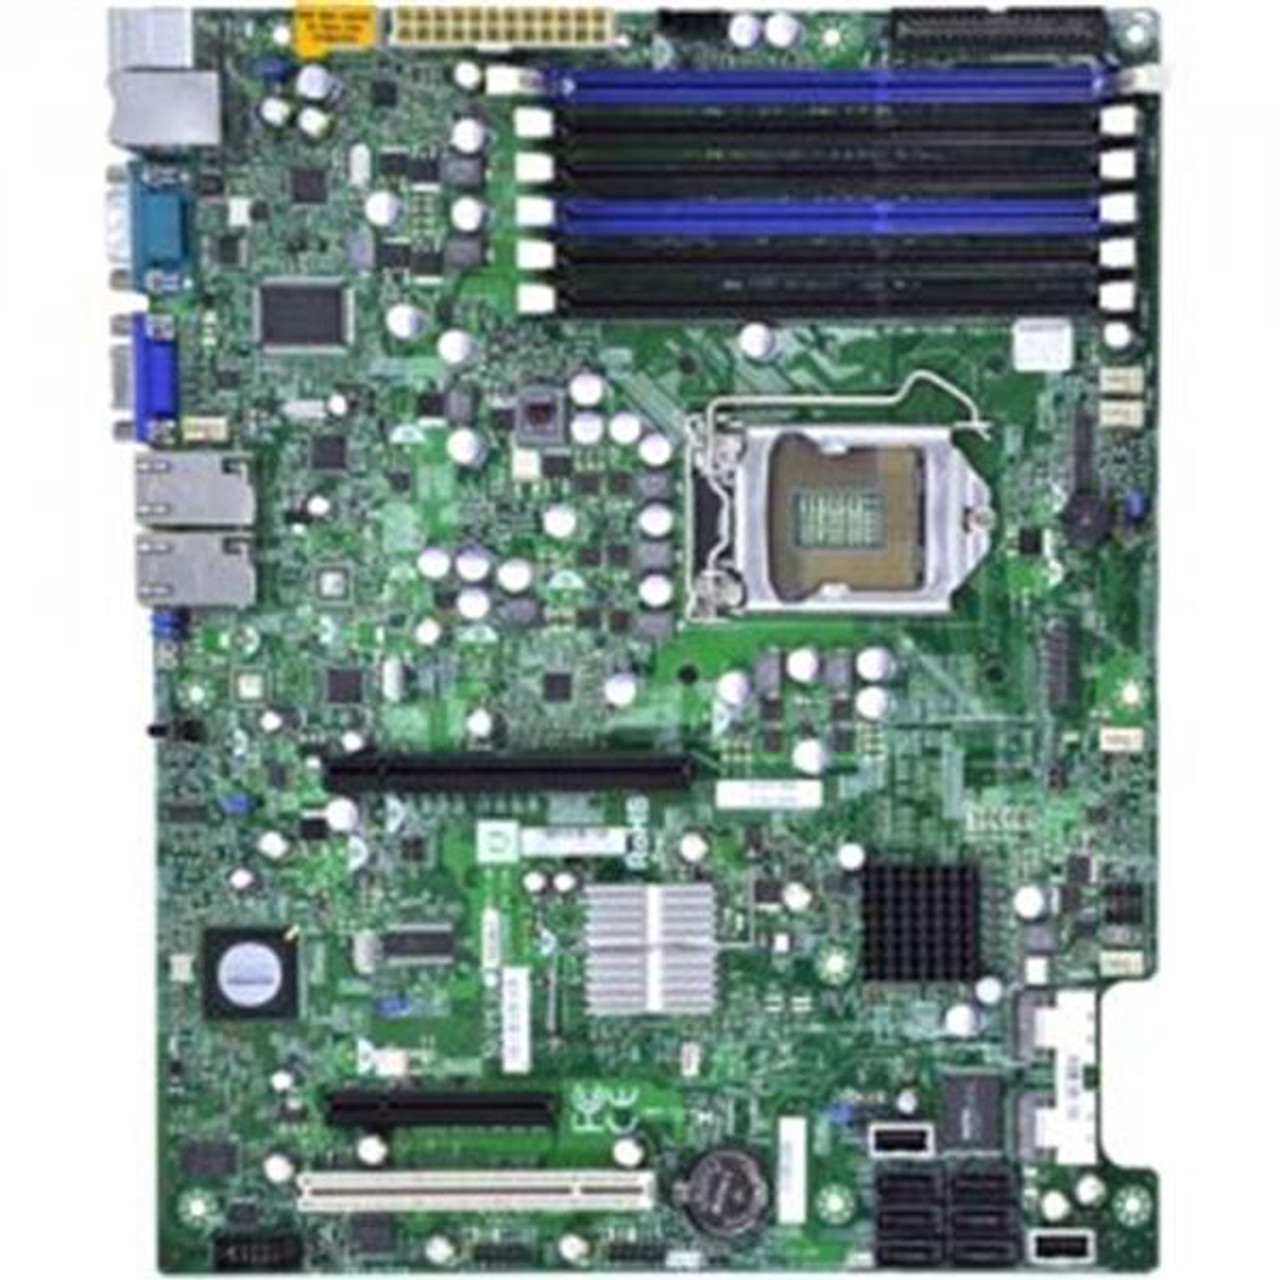 MBD-X8SI6-F SuperMicro X8SI6-F Socket LGA 1156 Intel 3420 Chipset Intel Xeon X3400/L3400 / Core i3 / Pentium Processors Support DDR3 6x DIMM 6x SATA 3